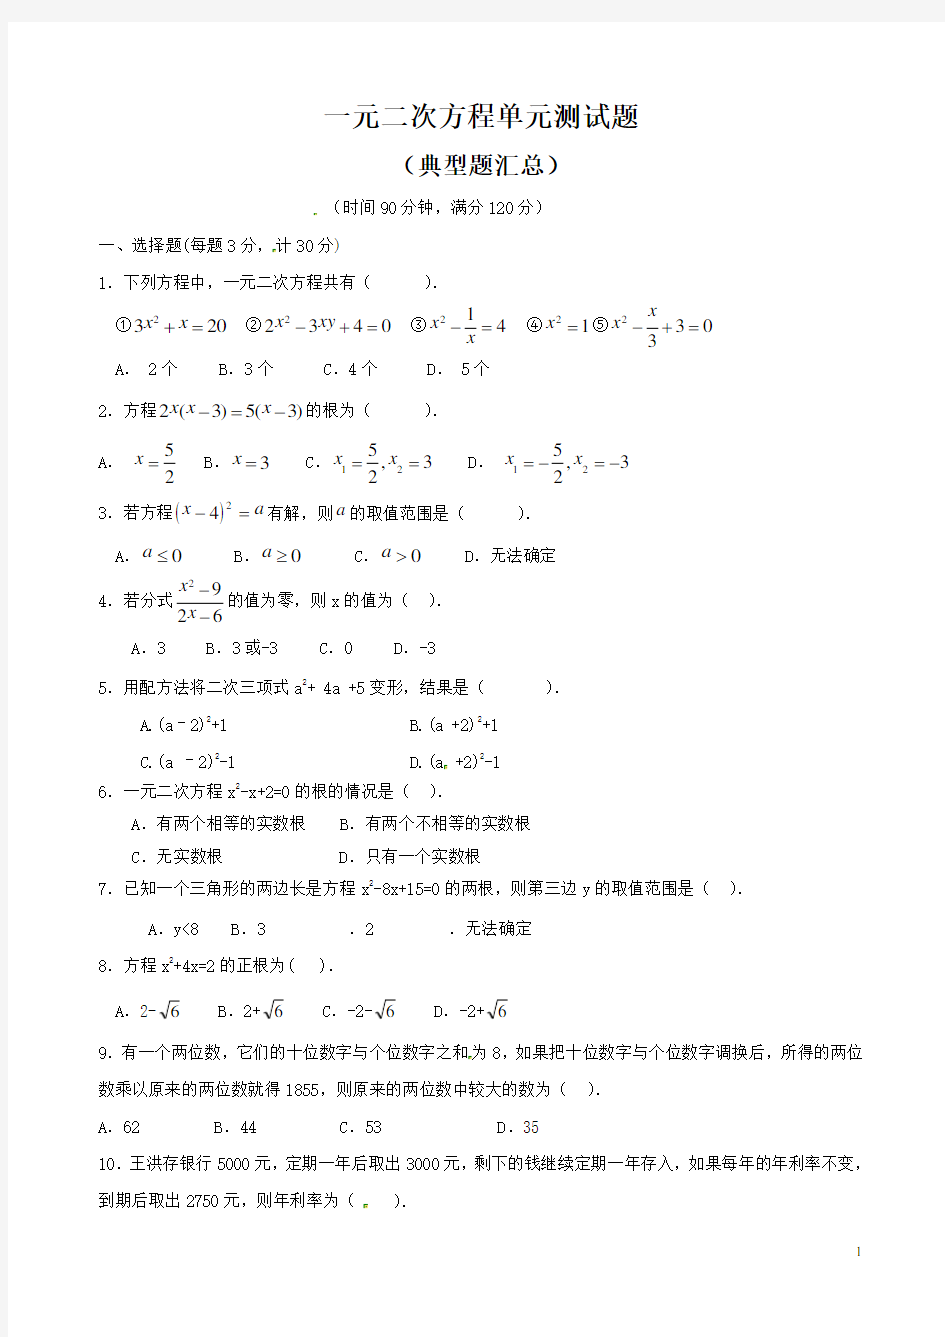 一元二次方程单元测试题(含答案)  (22)